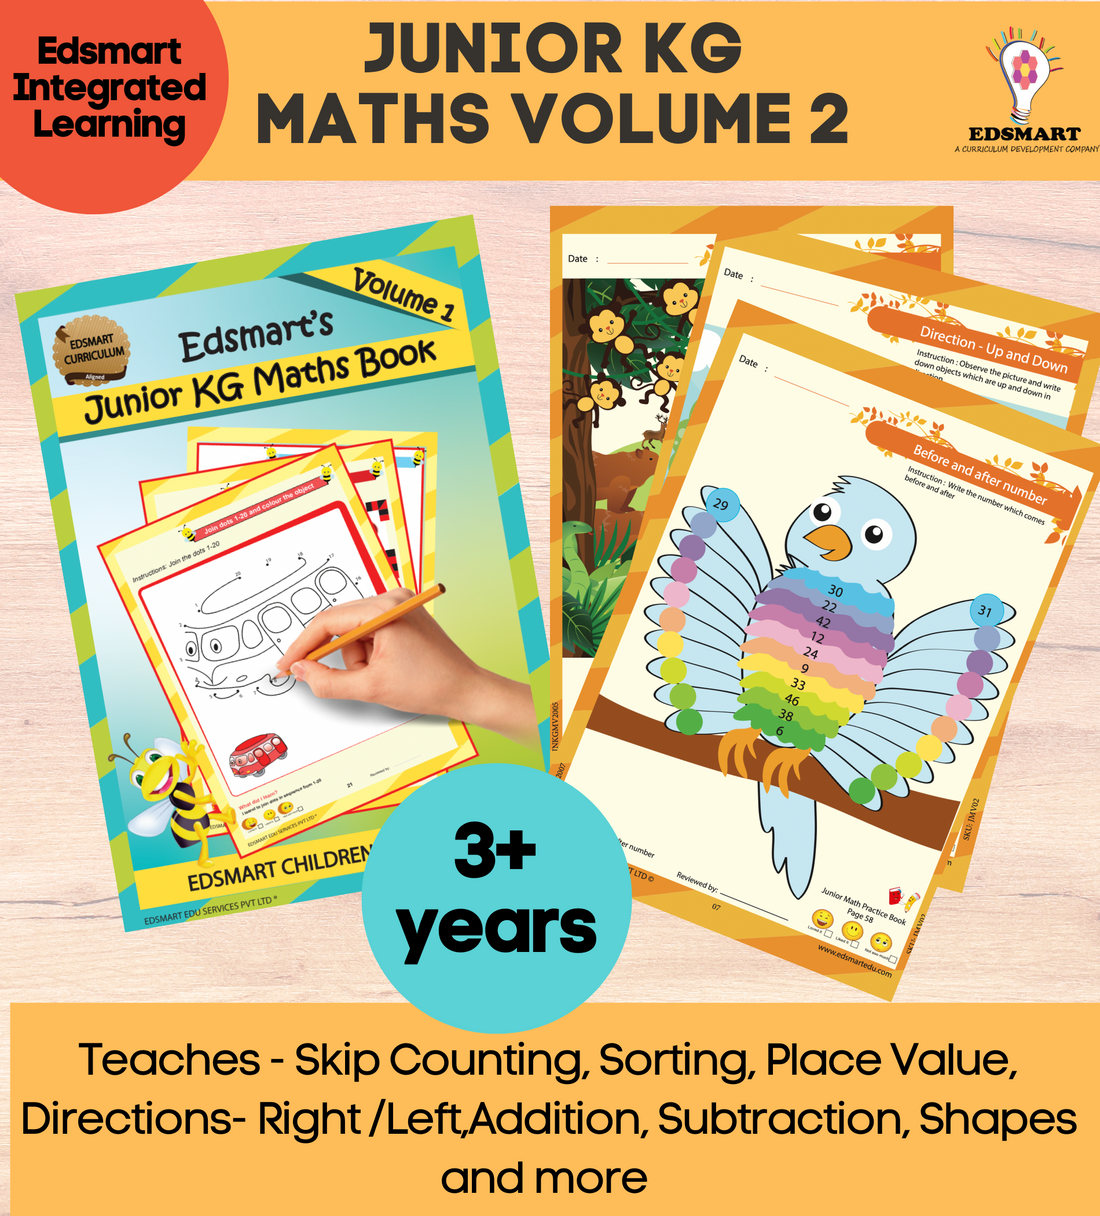 Text　books　Junior　Activity　Book　Kids　Maths　Kindergarten　CBSE　Activity　kids　KG　4+　for　Maths　Maths　LKG　Vol　Years　Books